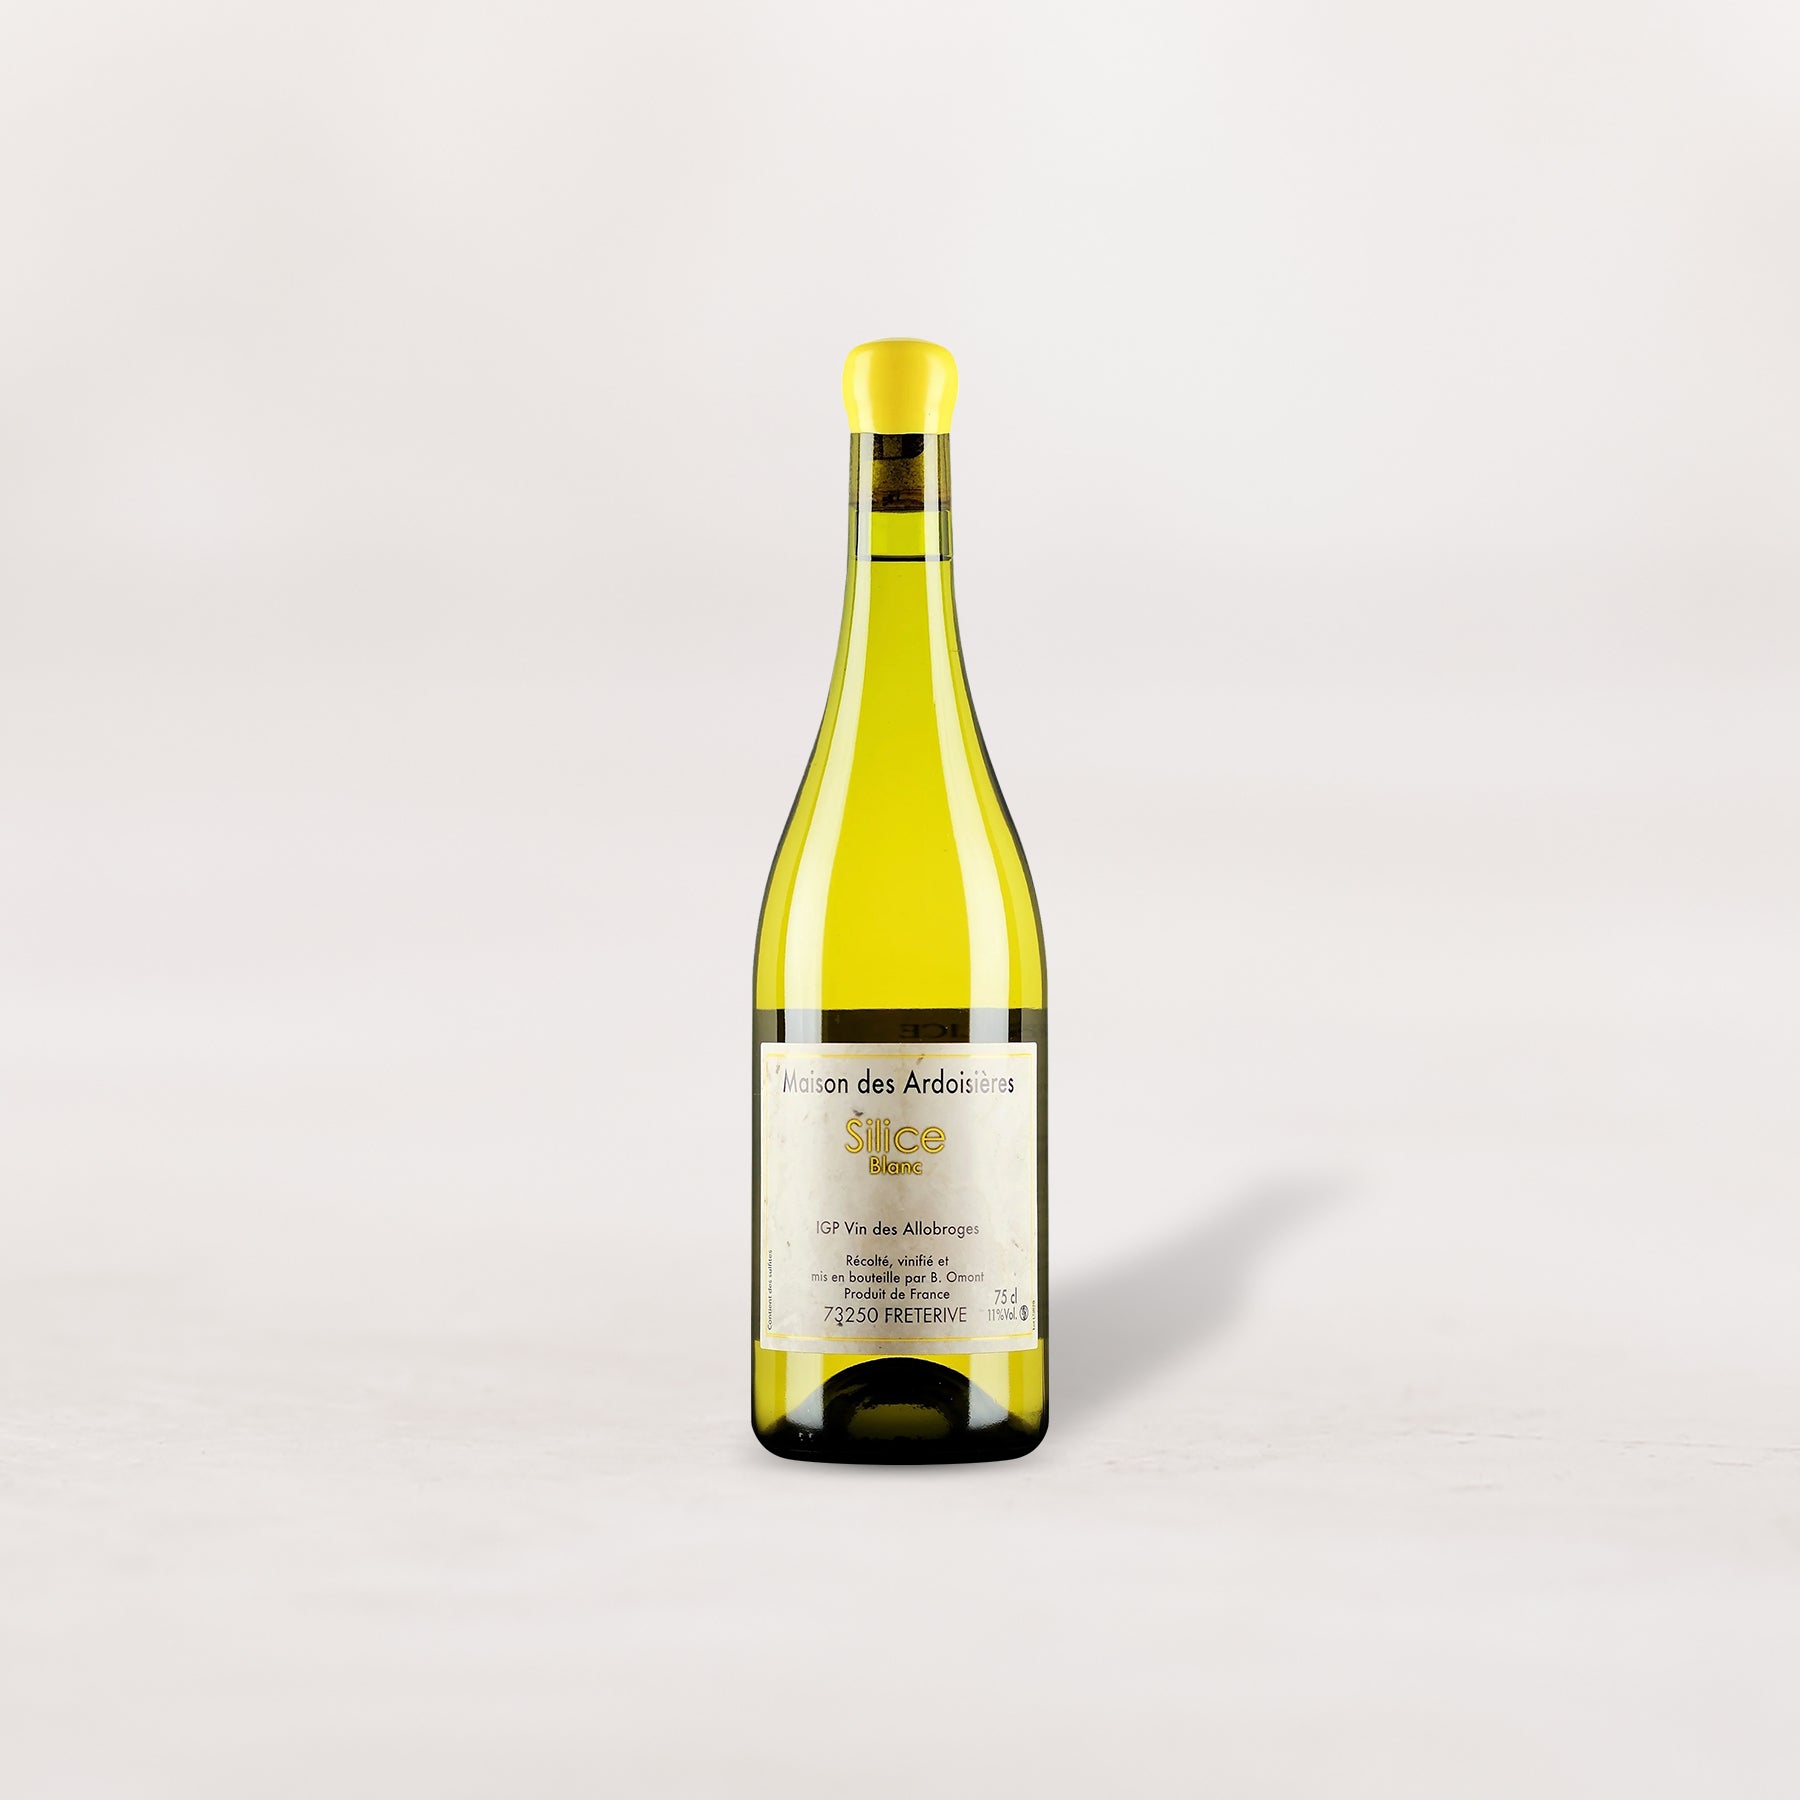 Maison des Ardoisières, IGP Vin des Allobroges “Silice” Blanc